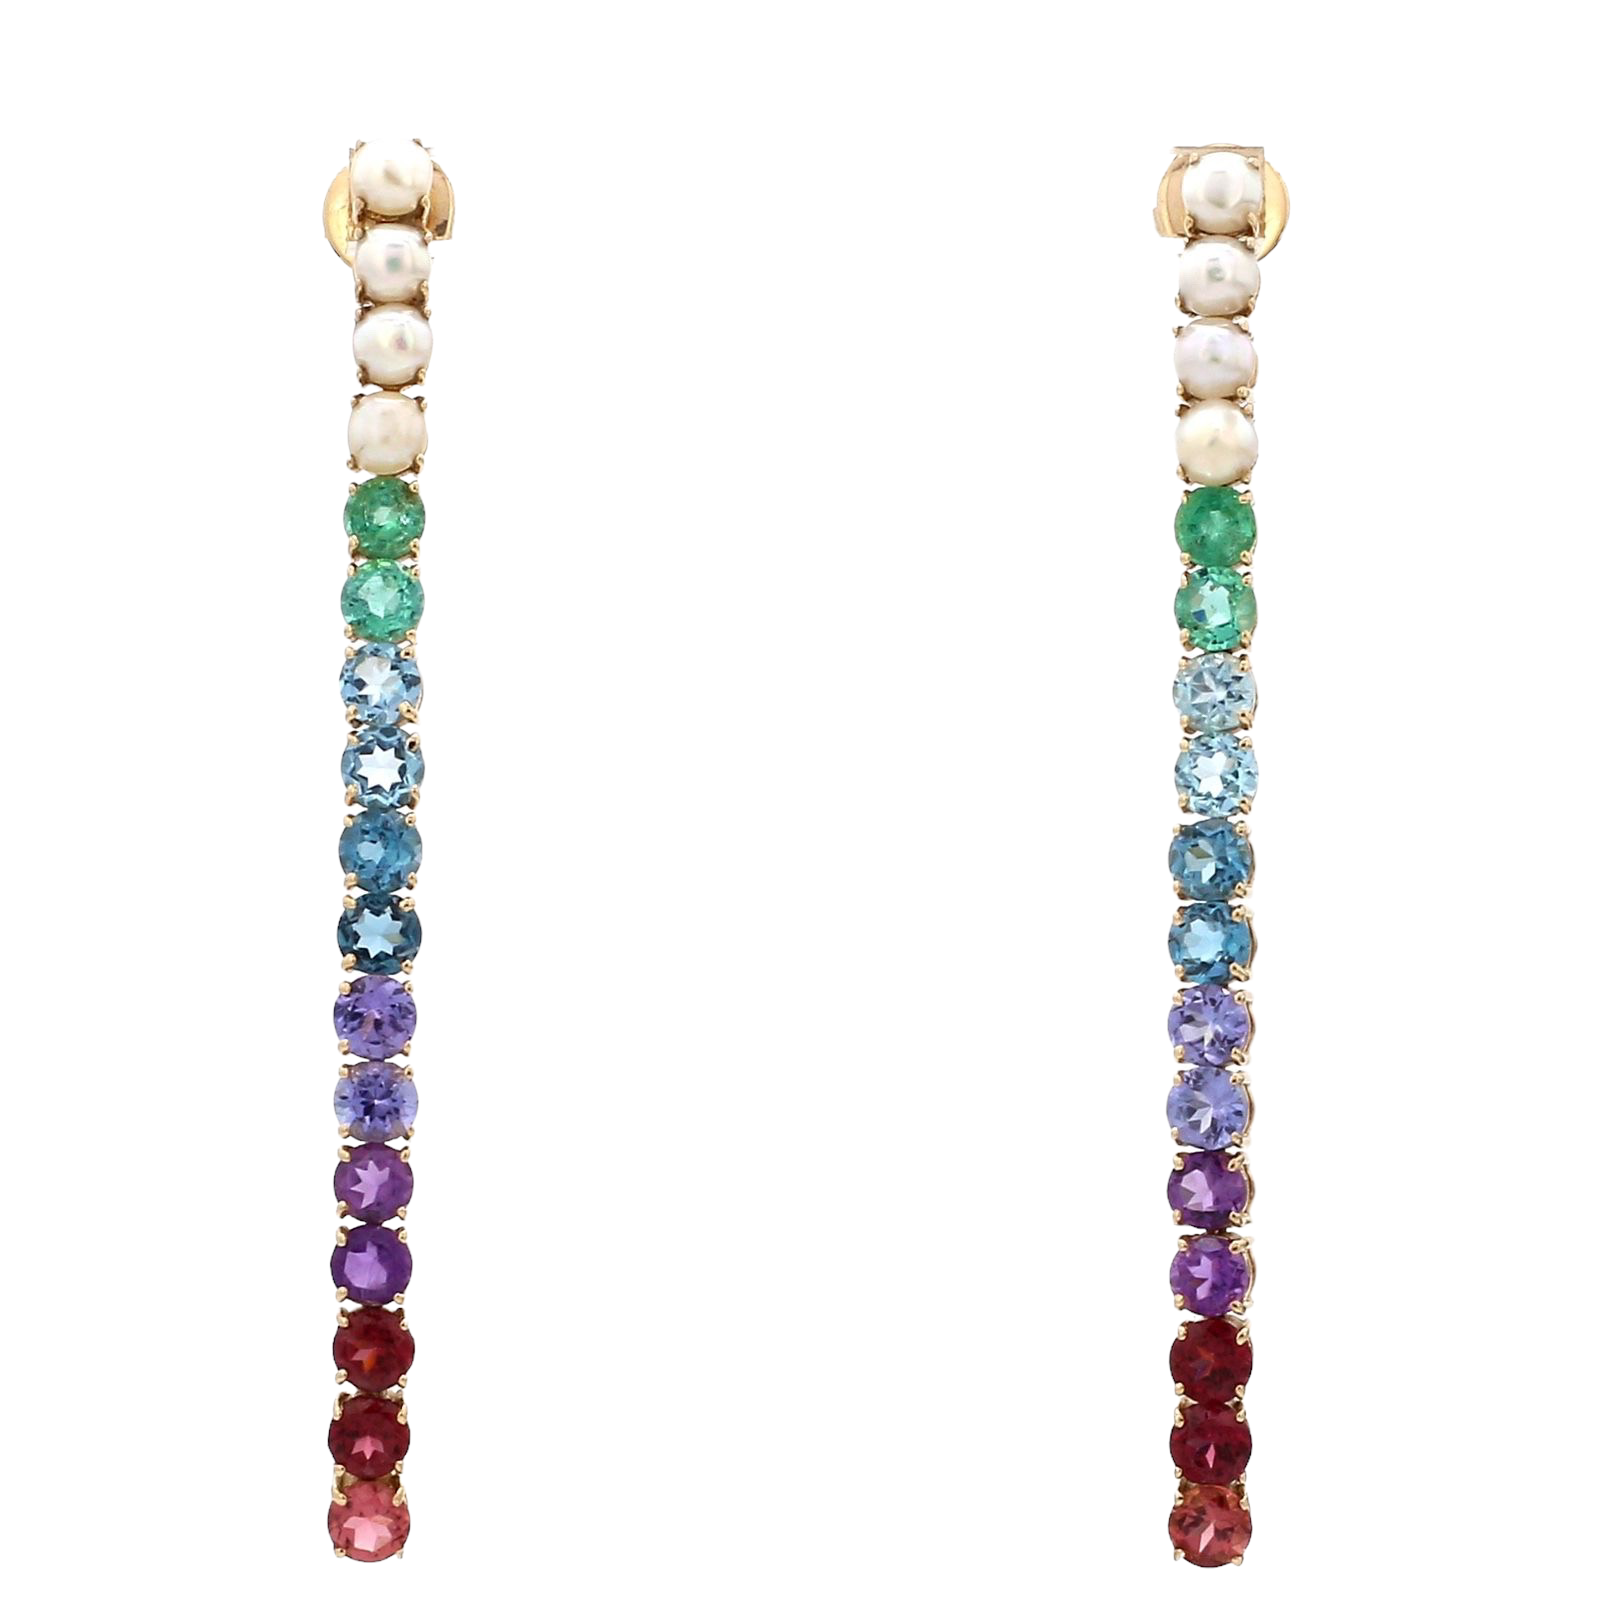 Typearl Gemstone and Pearl Drop Earrings